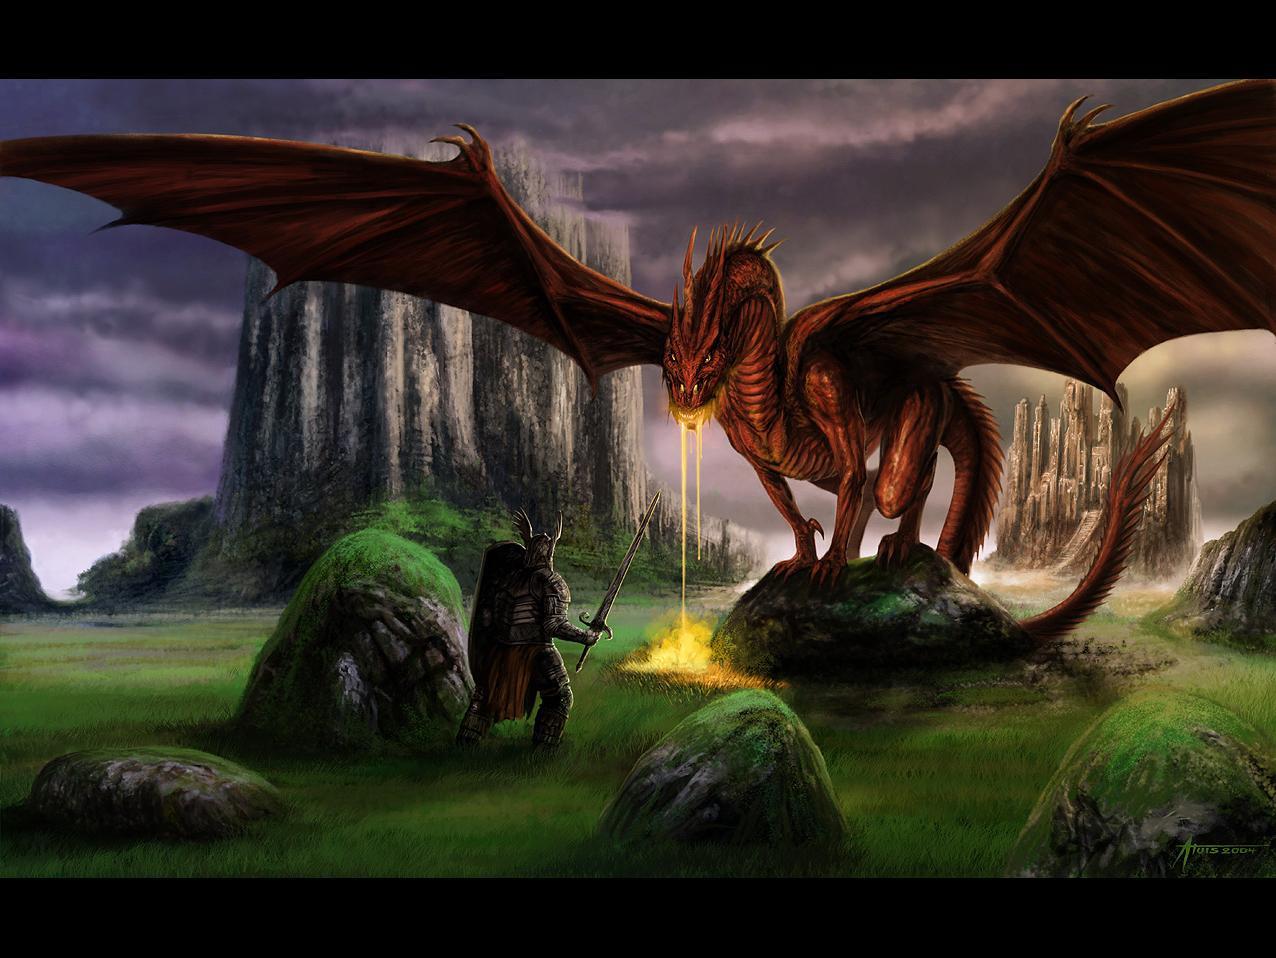 Descarga gratuita de fondo de pantalla para móvil de Dragones, Fantasía.